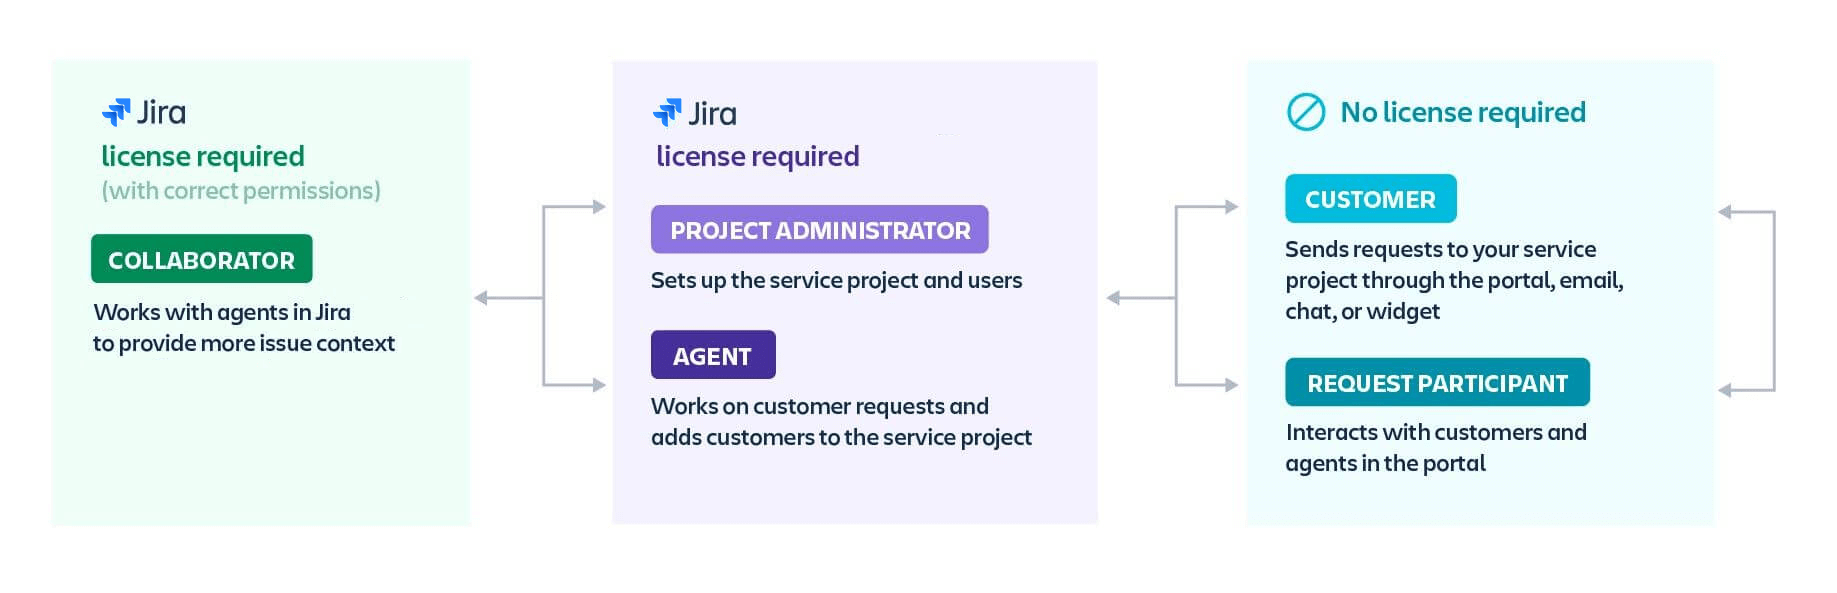 Tipi di utente in Jira Software e Jira Service Management: collaboratore, amministratore di progetto, agente, cliente e partecipante alla richiesta